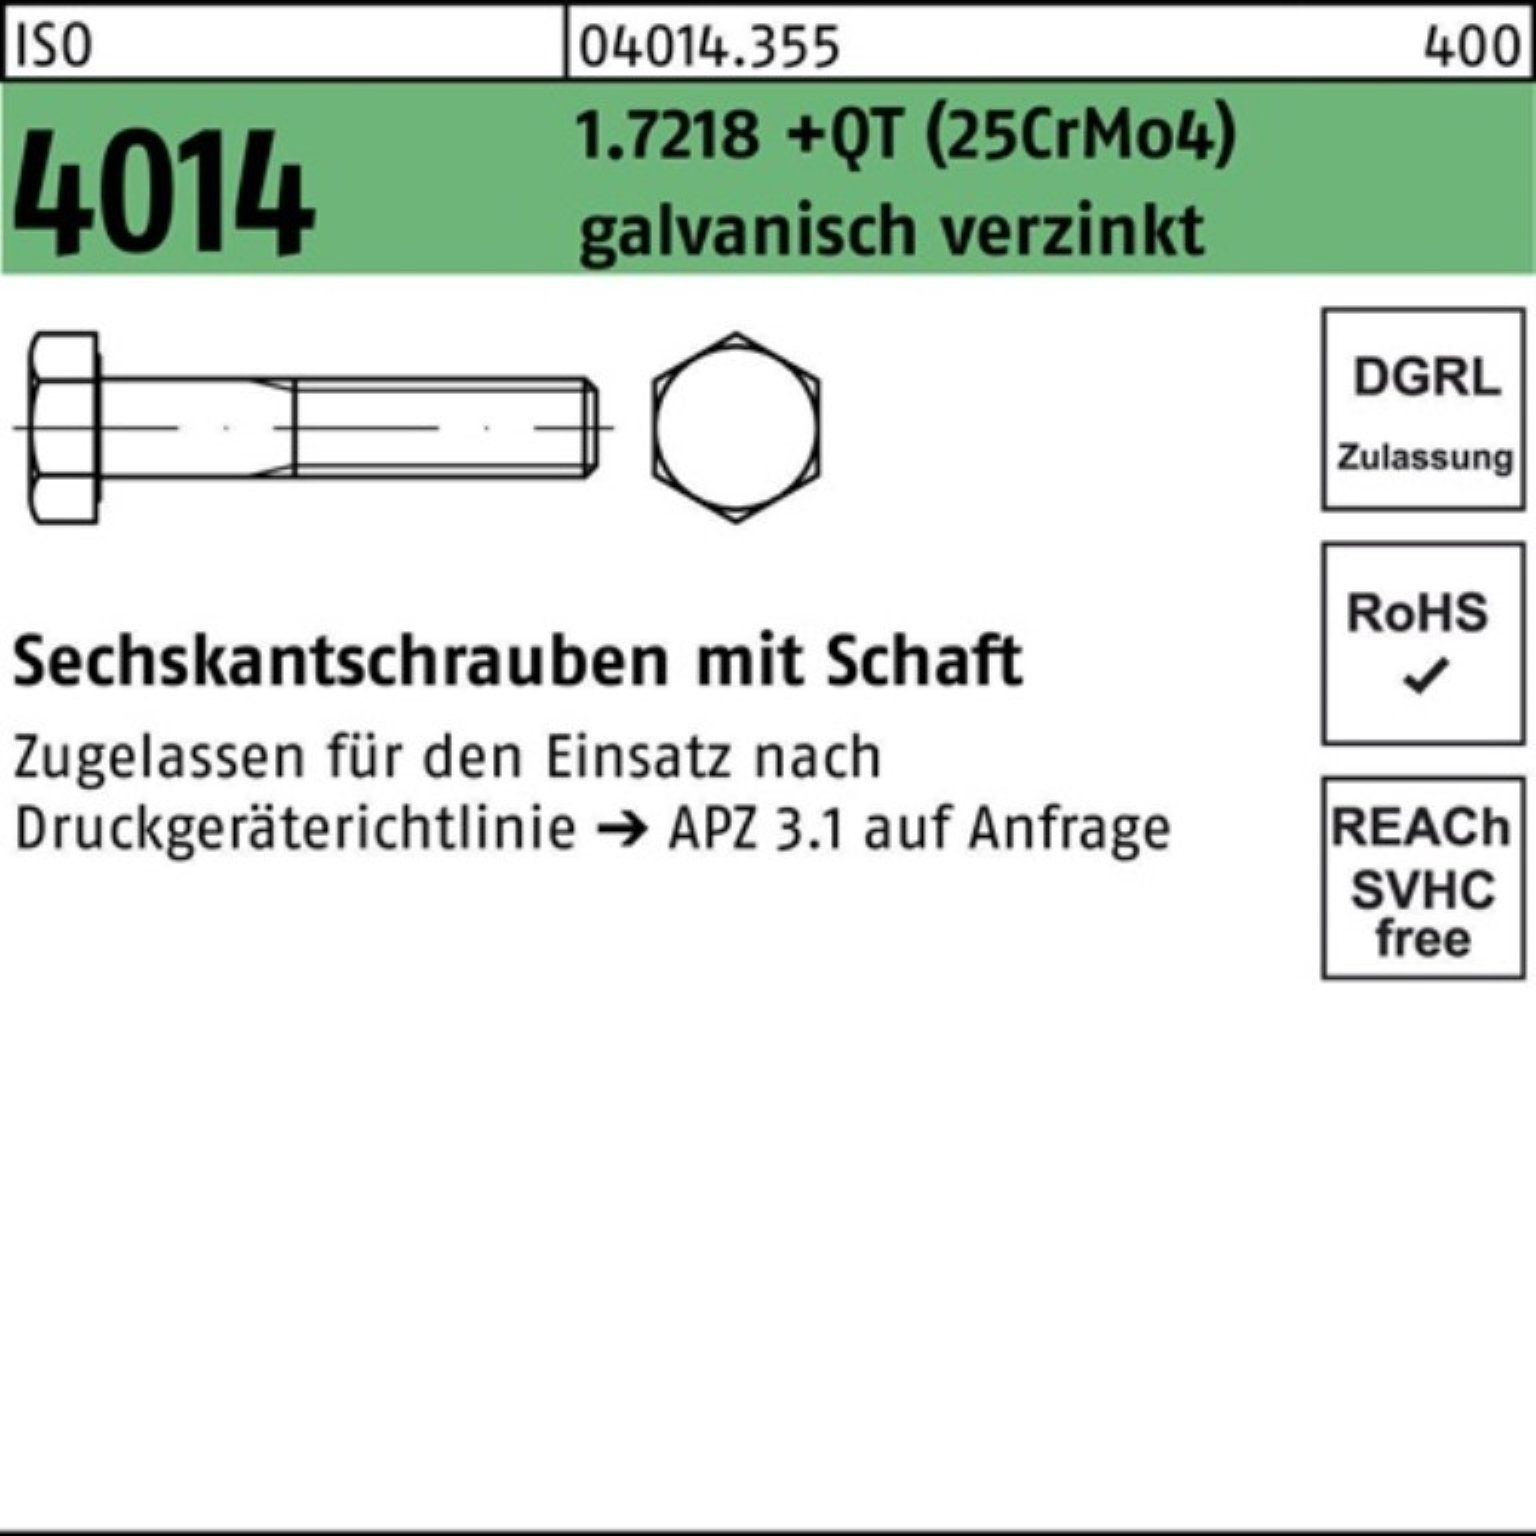 (25CrM 100er Sechskantschraube Pack 4014 M36x200 Bufab Sechskantschraube Schaft +QT 1.7218 ISO